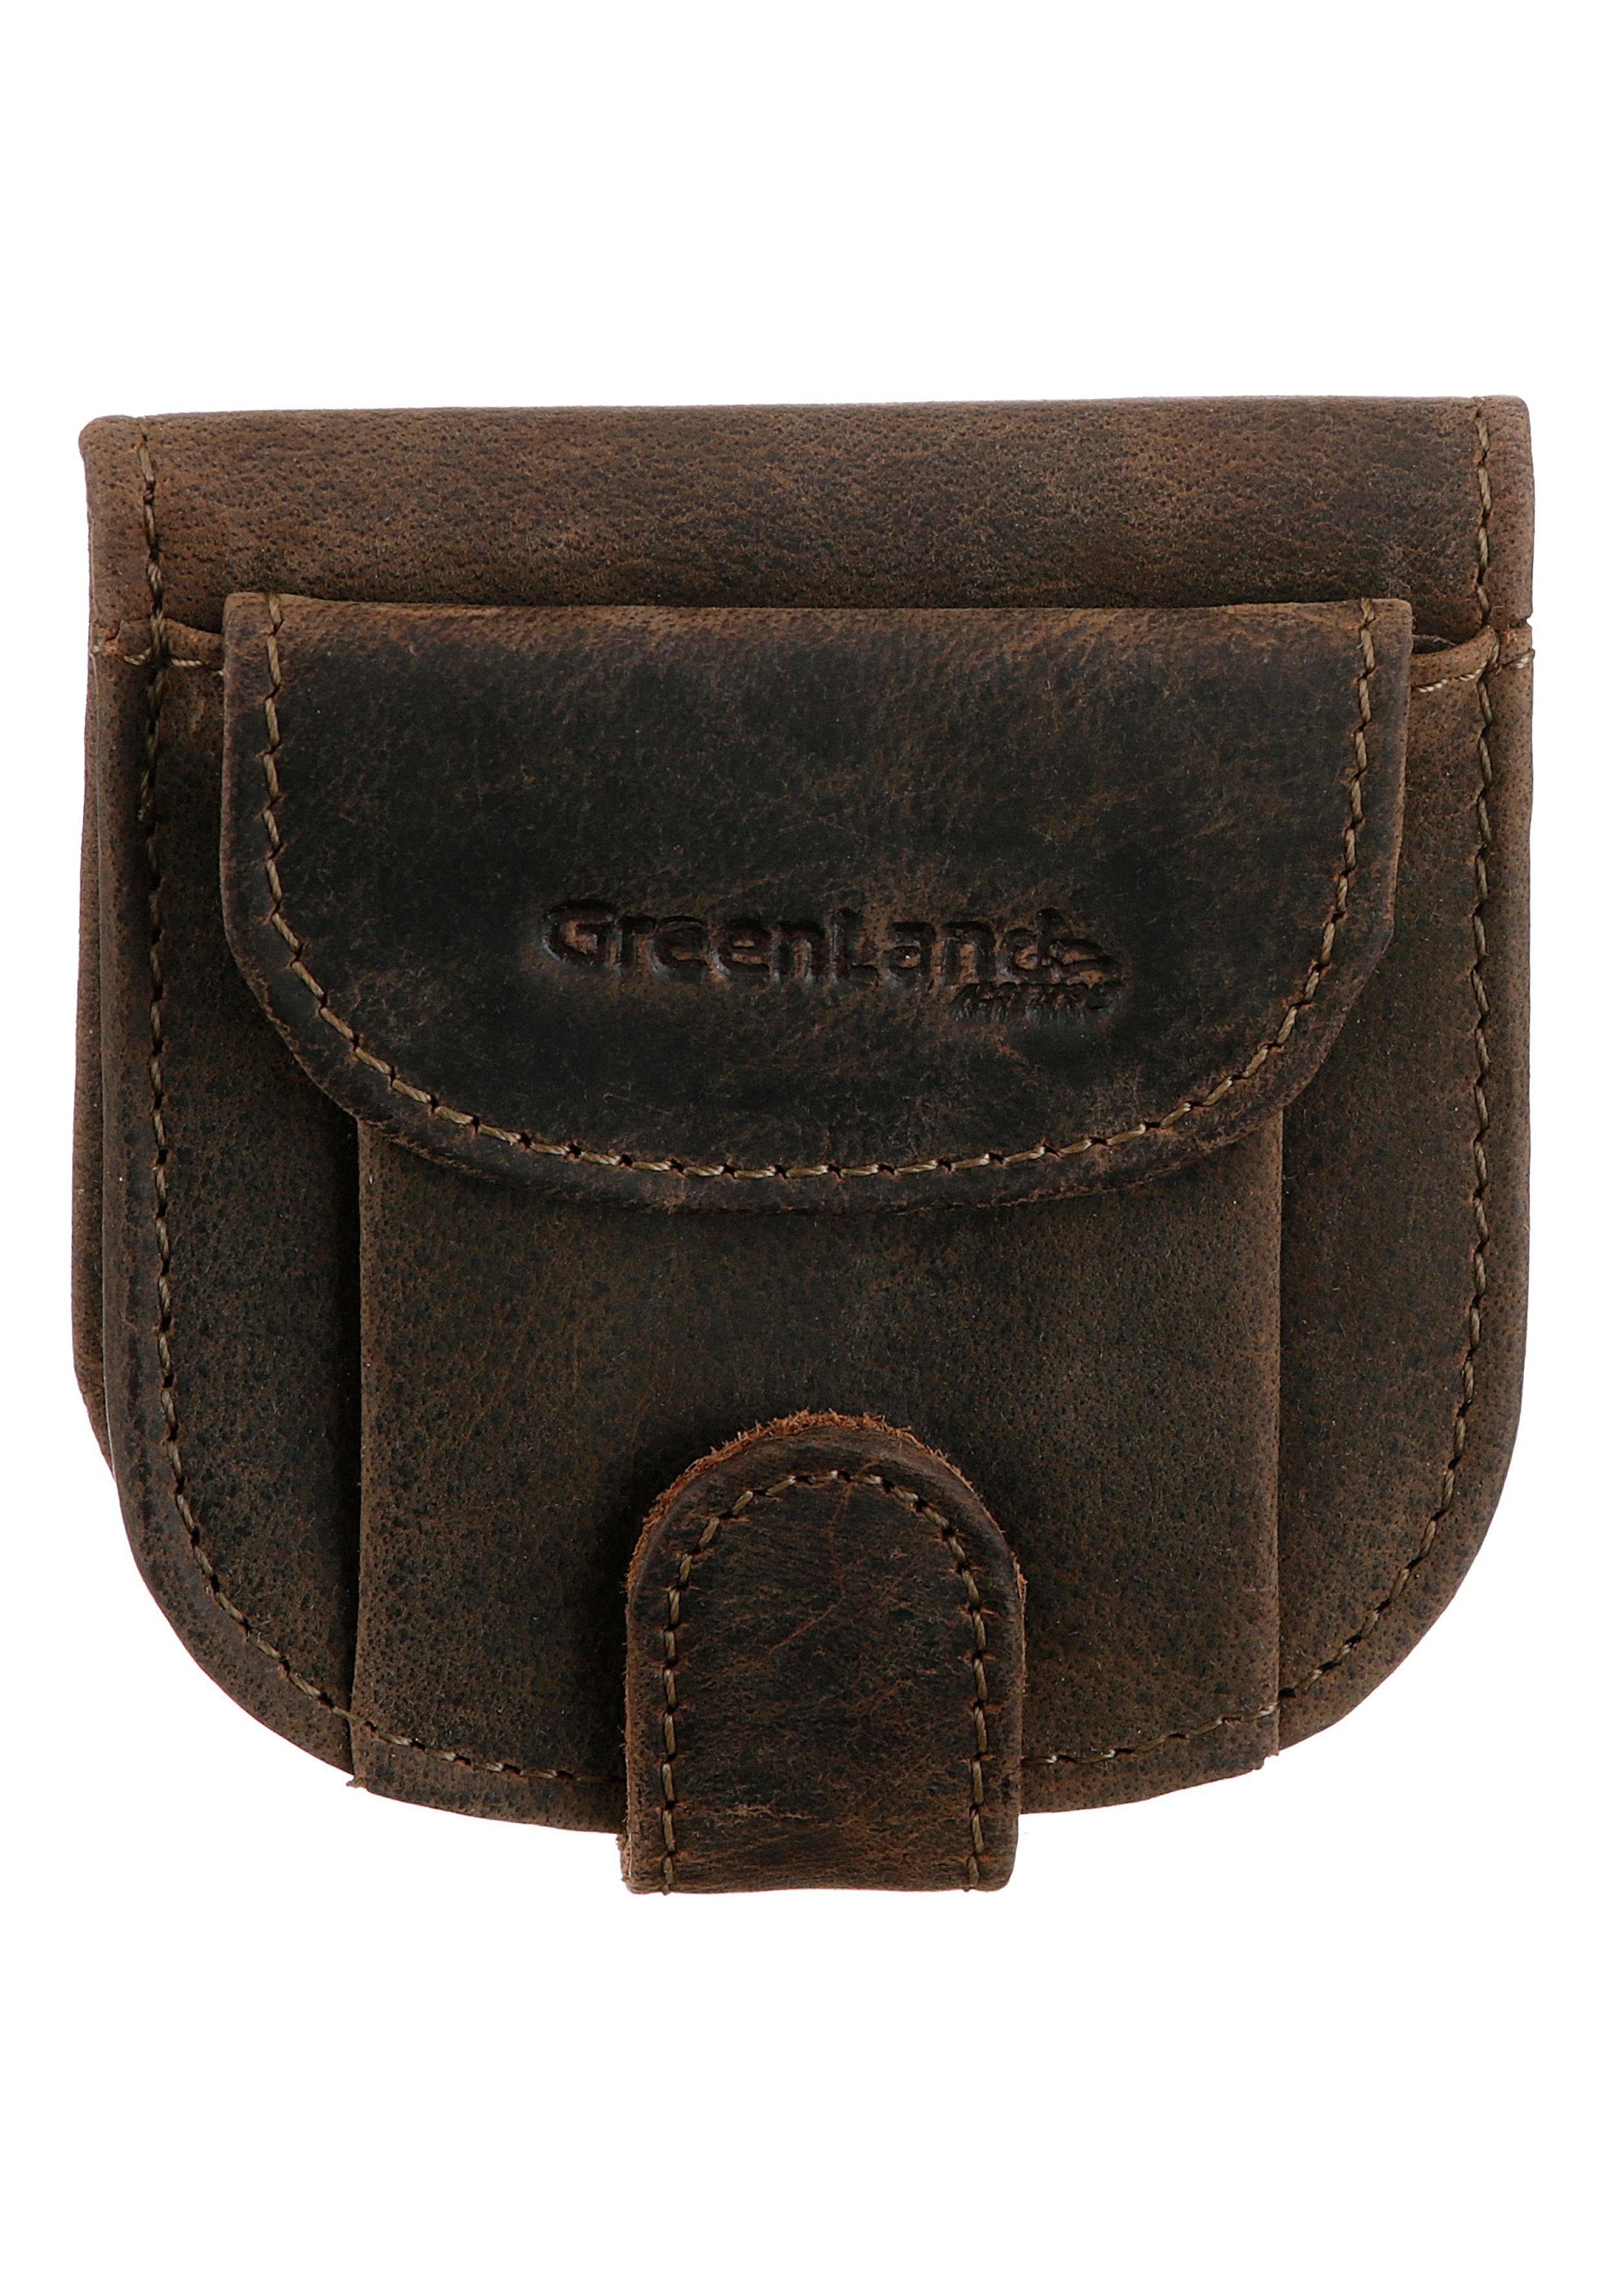 GreenLand Nature Geldbörse im echtem kleinen Format Leder, aus Stone